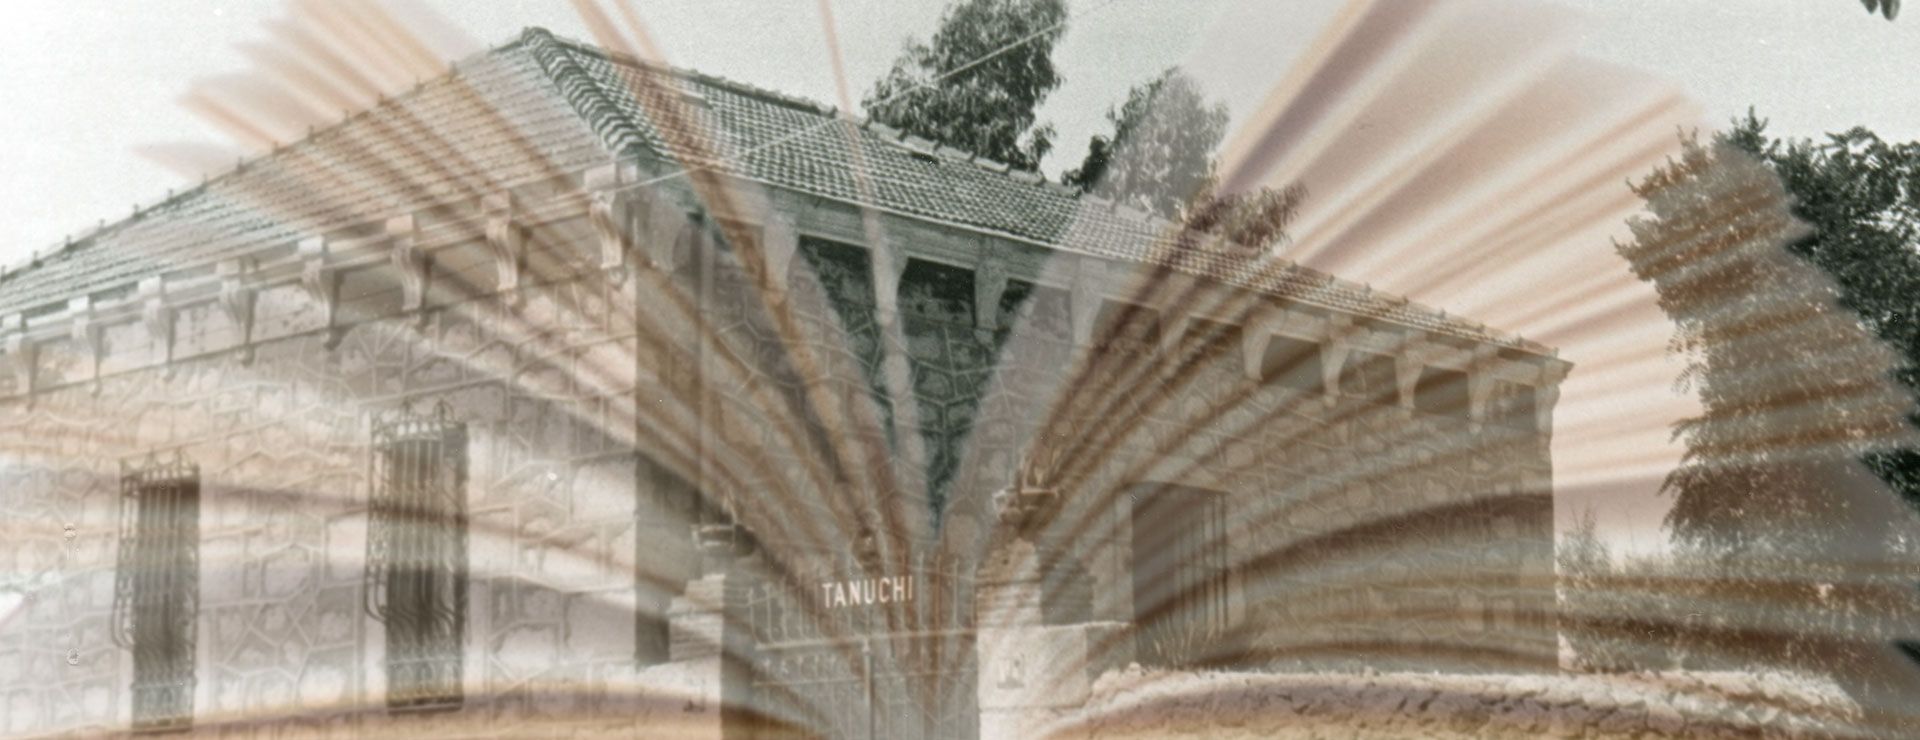 casa-tanuchi-historia